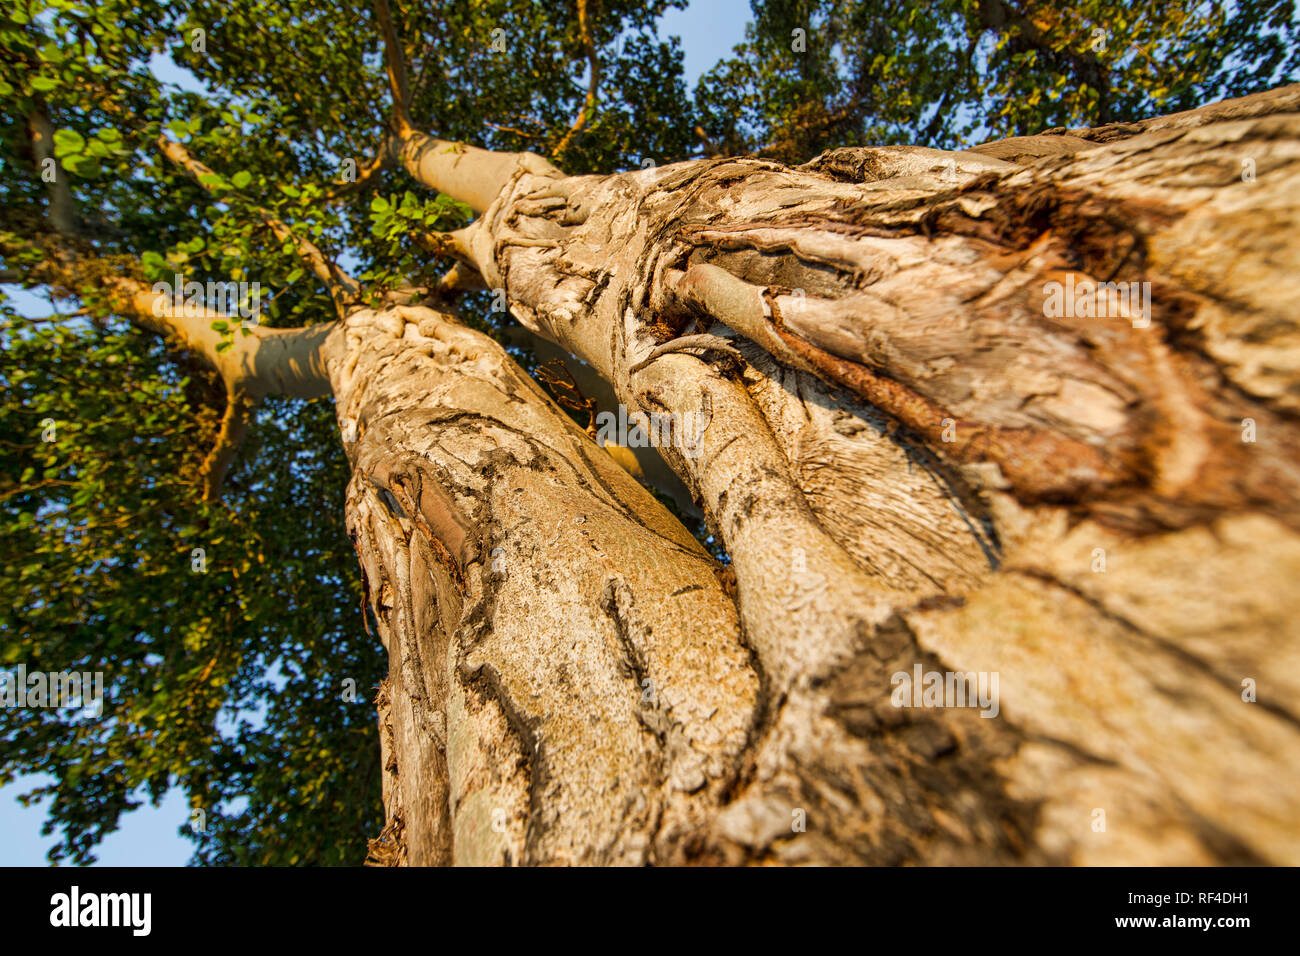 Wildnis kann Schäden an Bäumen verursacht durch Scheuern oder Schälen der Rinde, wie durch die Narben auf dem riesigen Feigenbaum, Ficus, Malawi belegt. Stockfoto